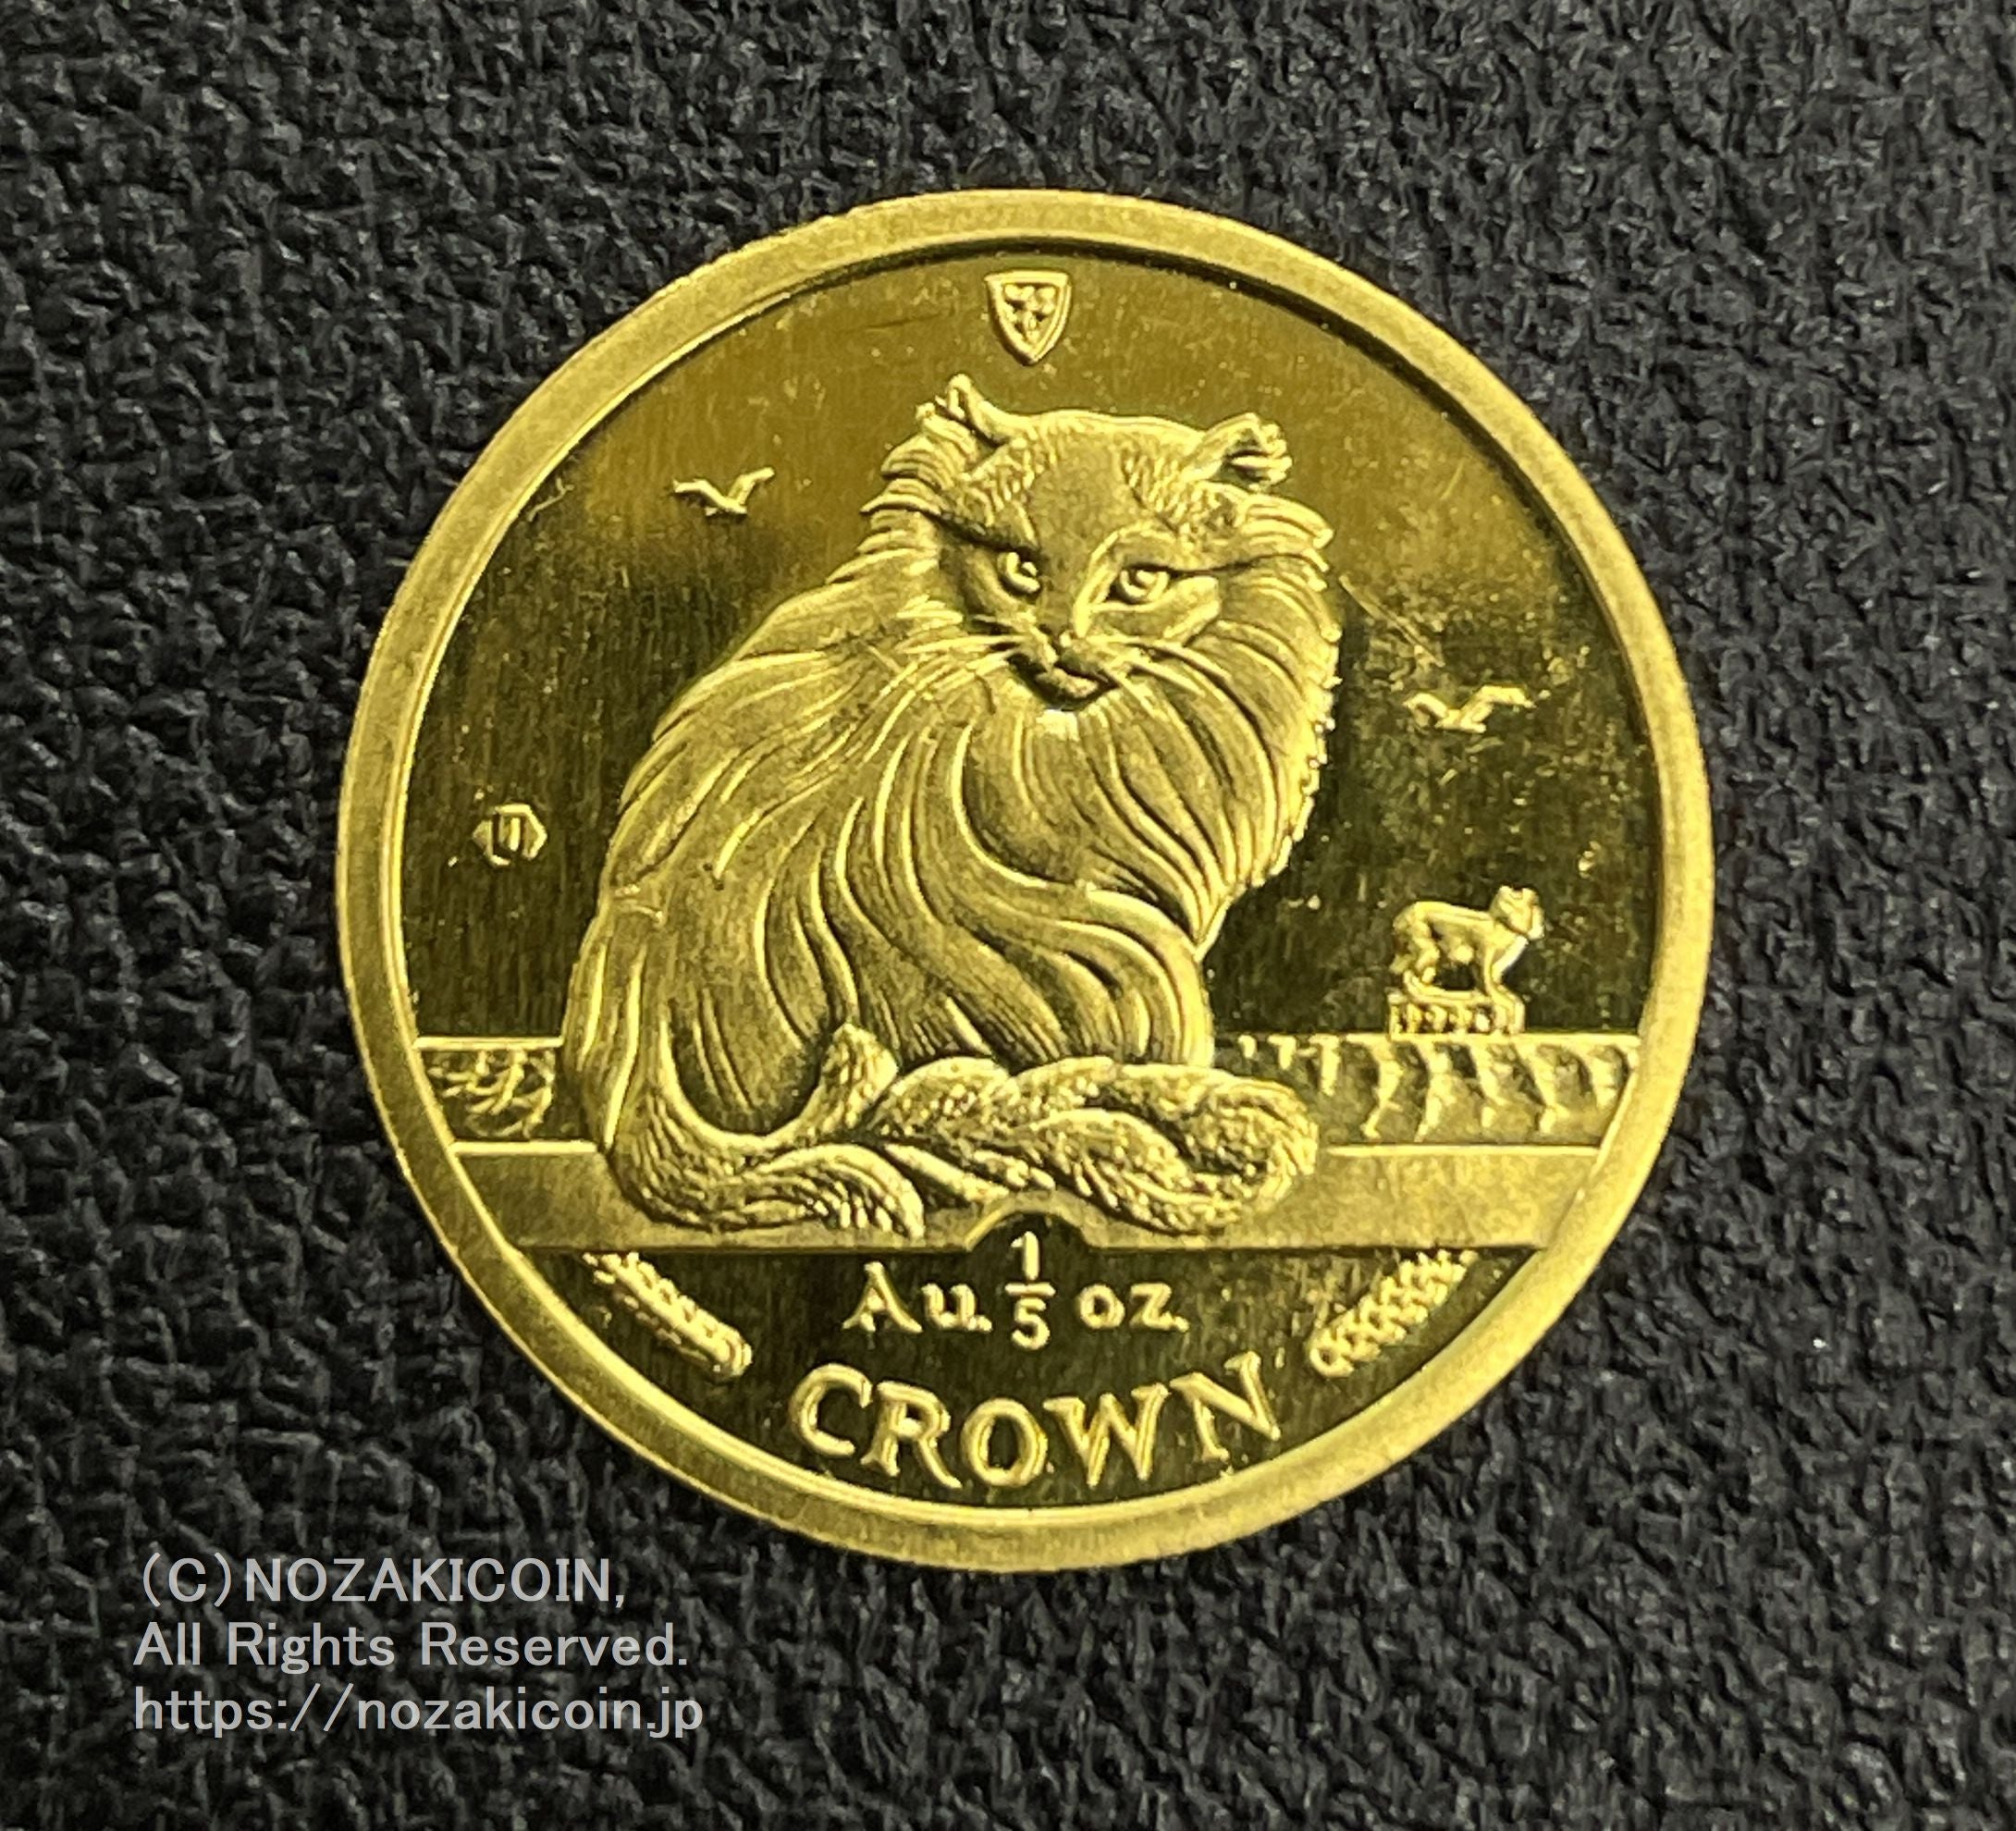 2013年英領マン島5オンスクラウン大型銀貨★NGC PF69UC種類外国貨幣硬貨